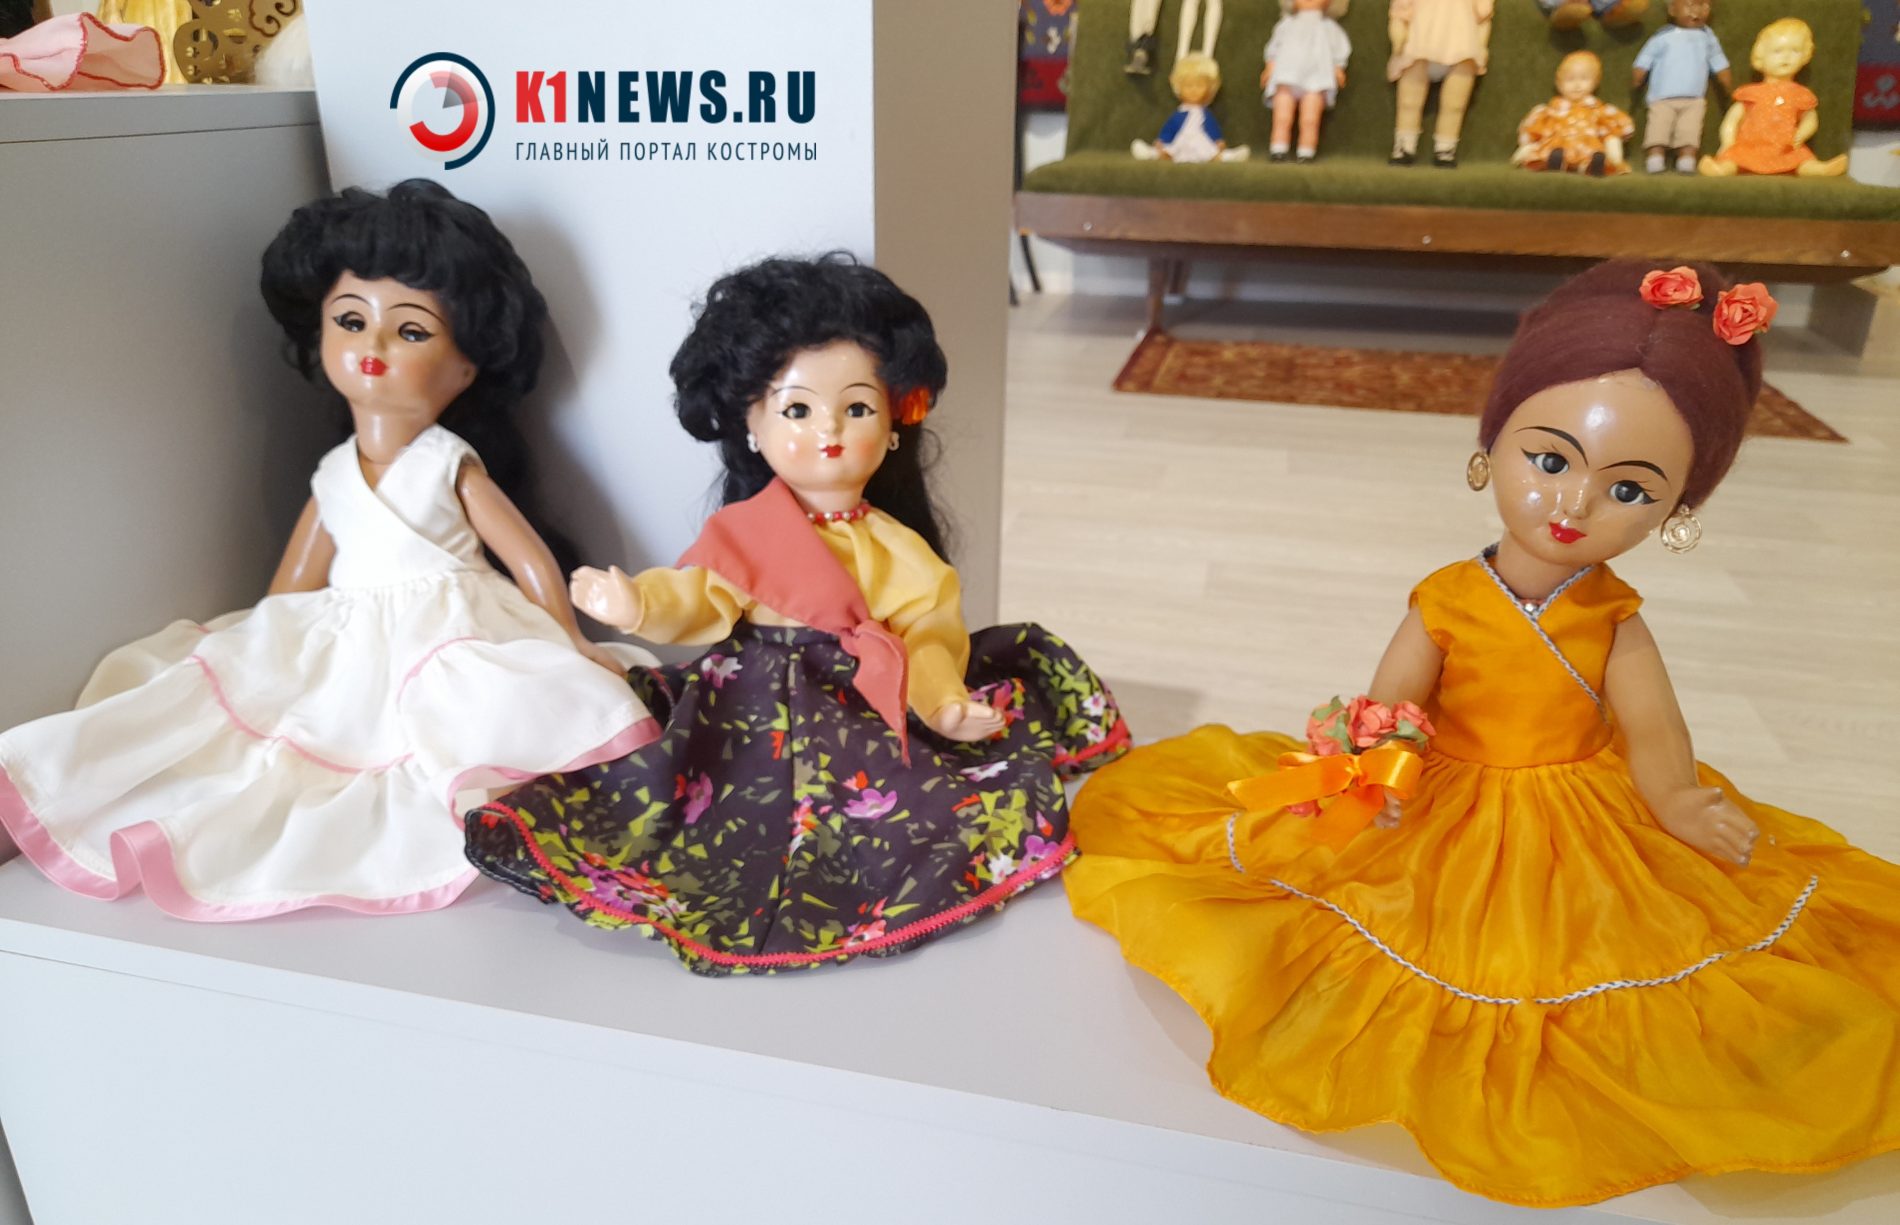 В Кострому передали уникальных кукол из разных европейских стран